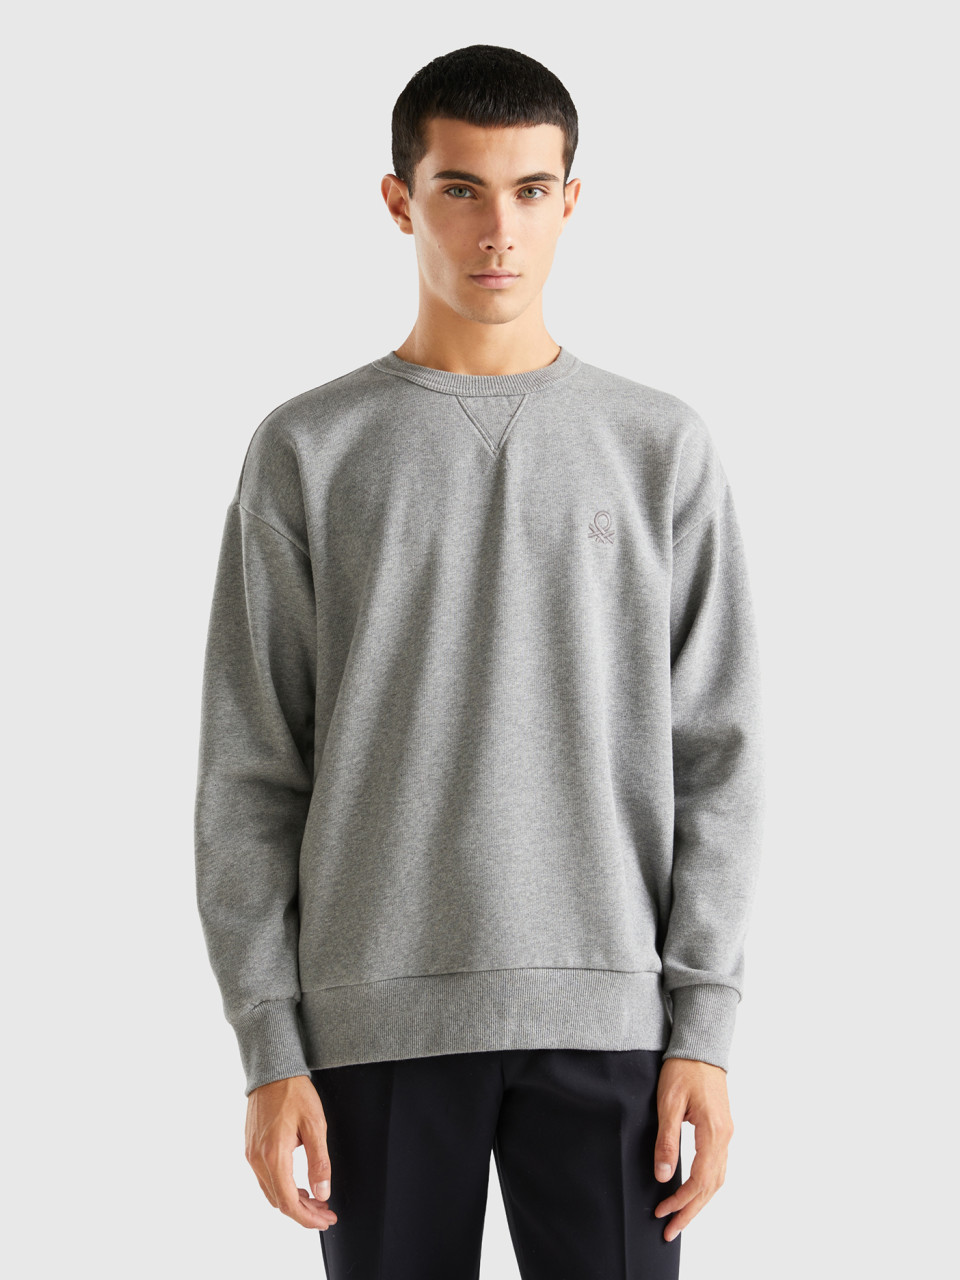 Benetton, Warmer Rundhals-sweater, Grau, male